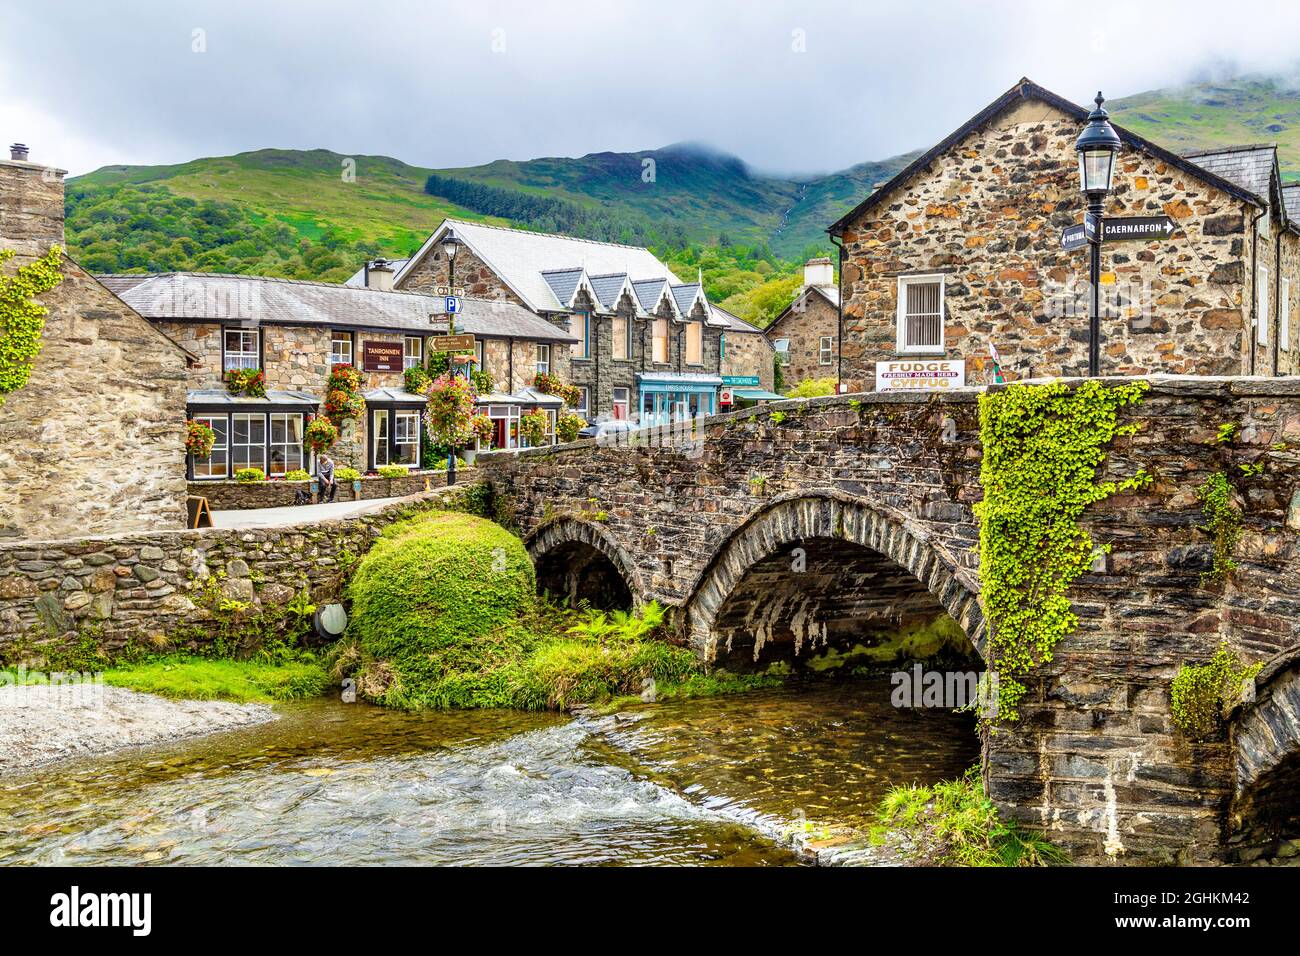 Case in ardesia, ponte e il fiume Colwyn nel villaggio di Beddgelert, Snowdonia, Galles, Regno Unito Foto Stock